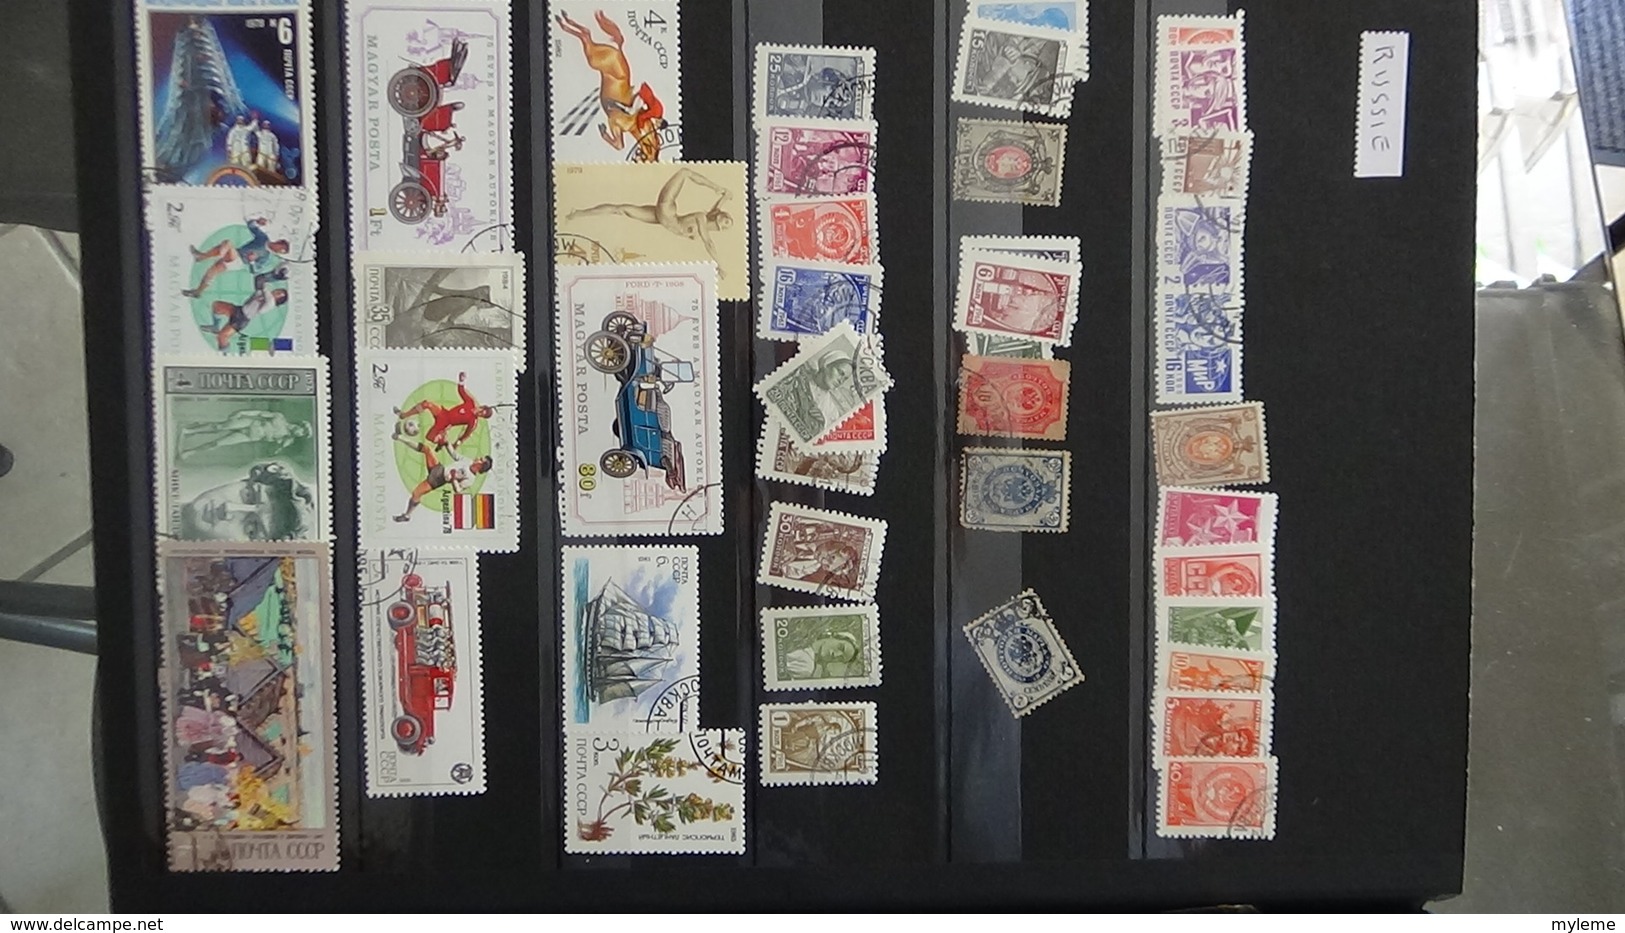 Collection de timbres oblitérés du monde dont bonnes valeurs de France. Port offert à partir de 50 euros d'achat.